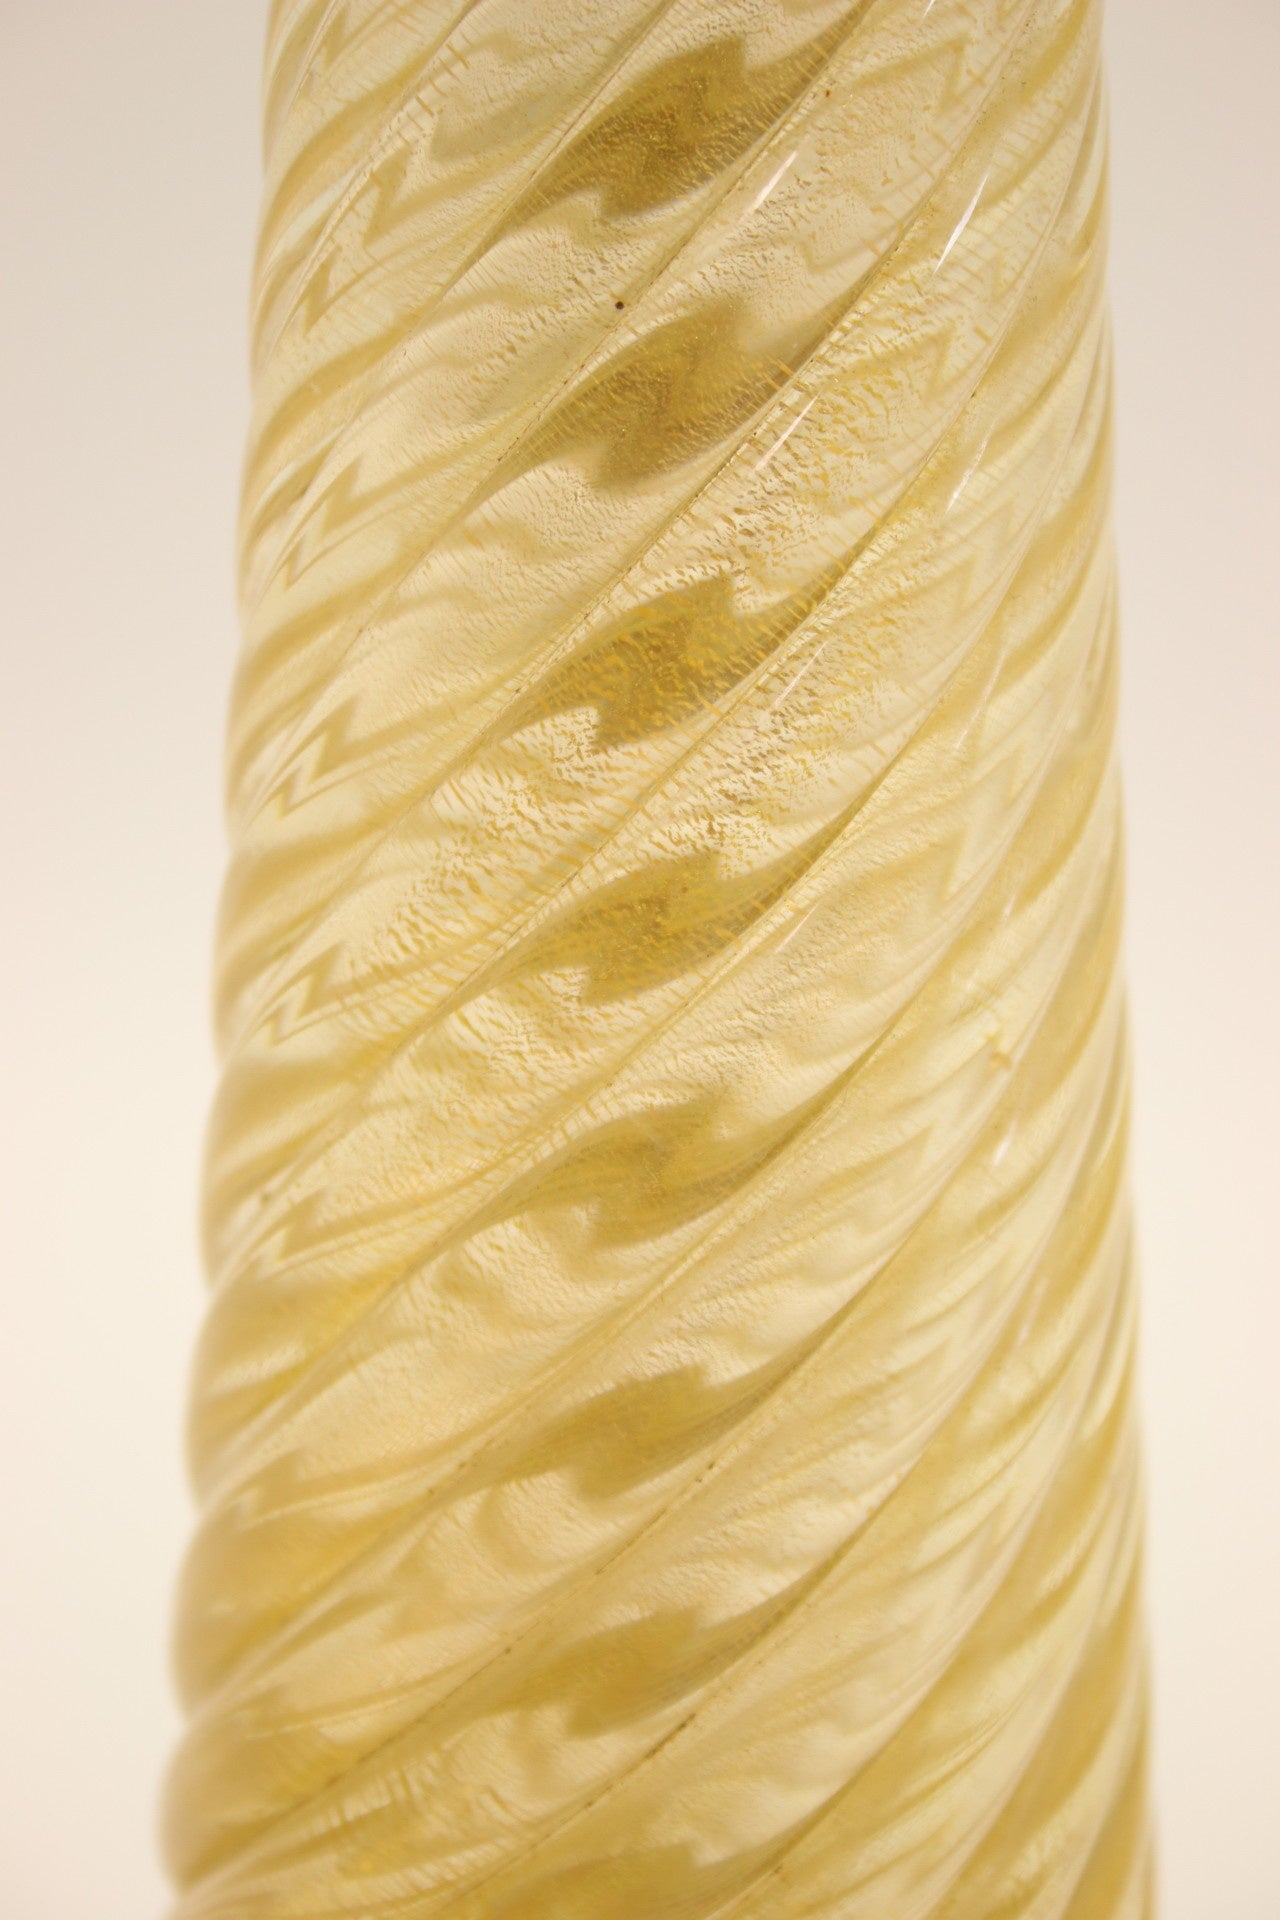 Murano Italy Gouden Gedraaide Lamp voet 50 cm detail standaard glas